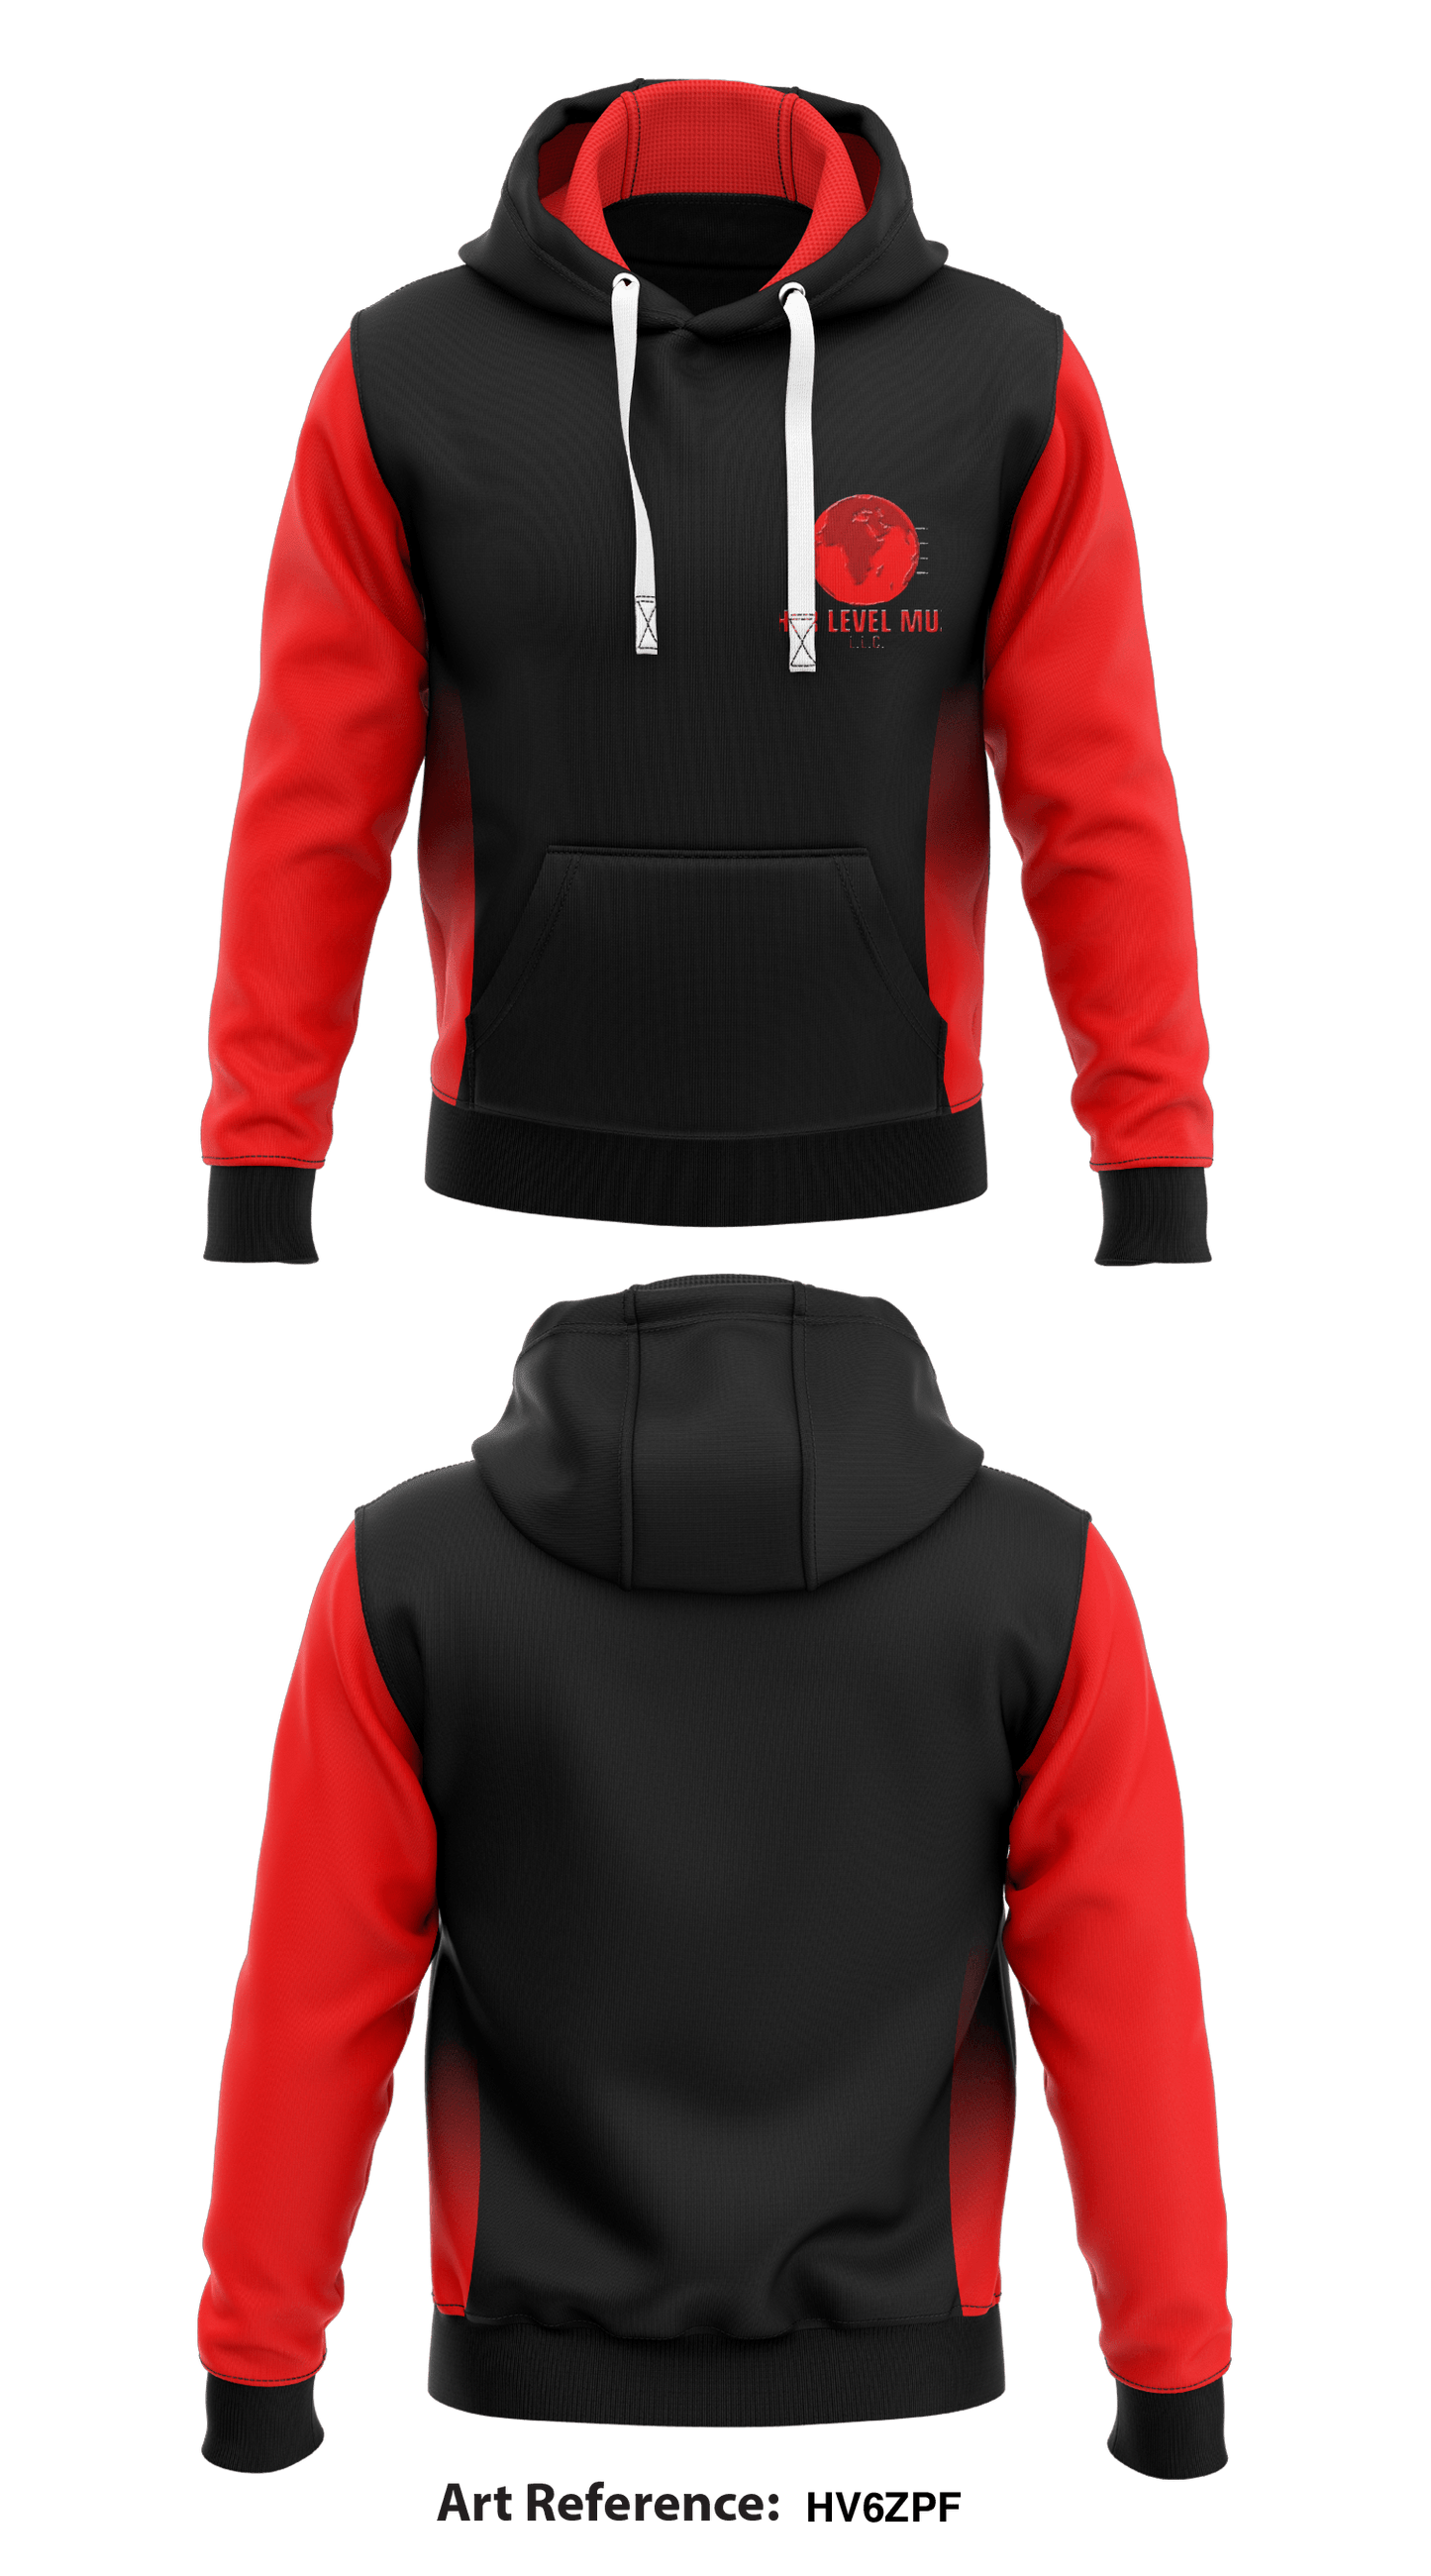 Kobra Gear Store 1  Core Men's Hooded Performance Sweatshirt - Hv6ZPF